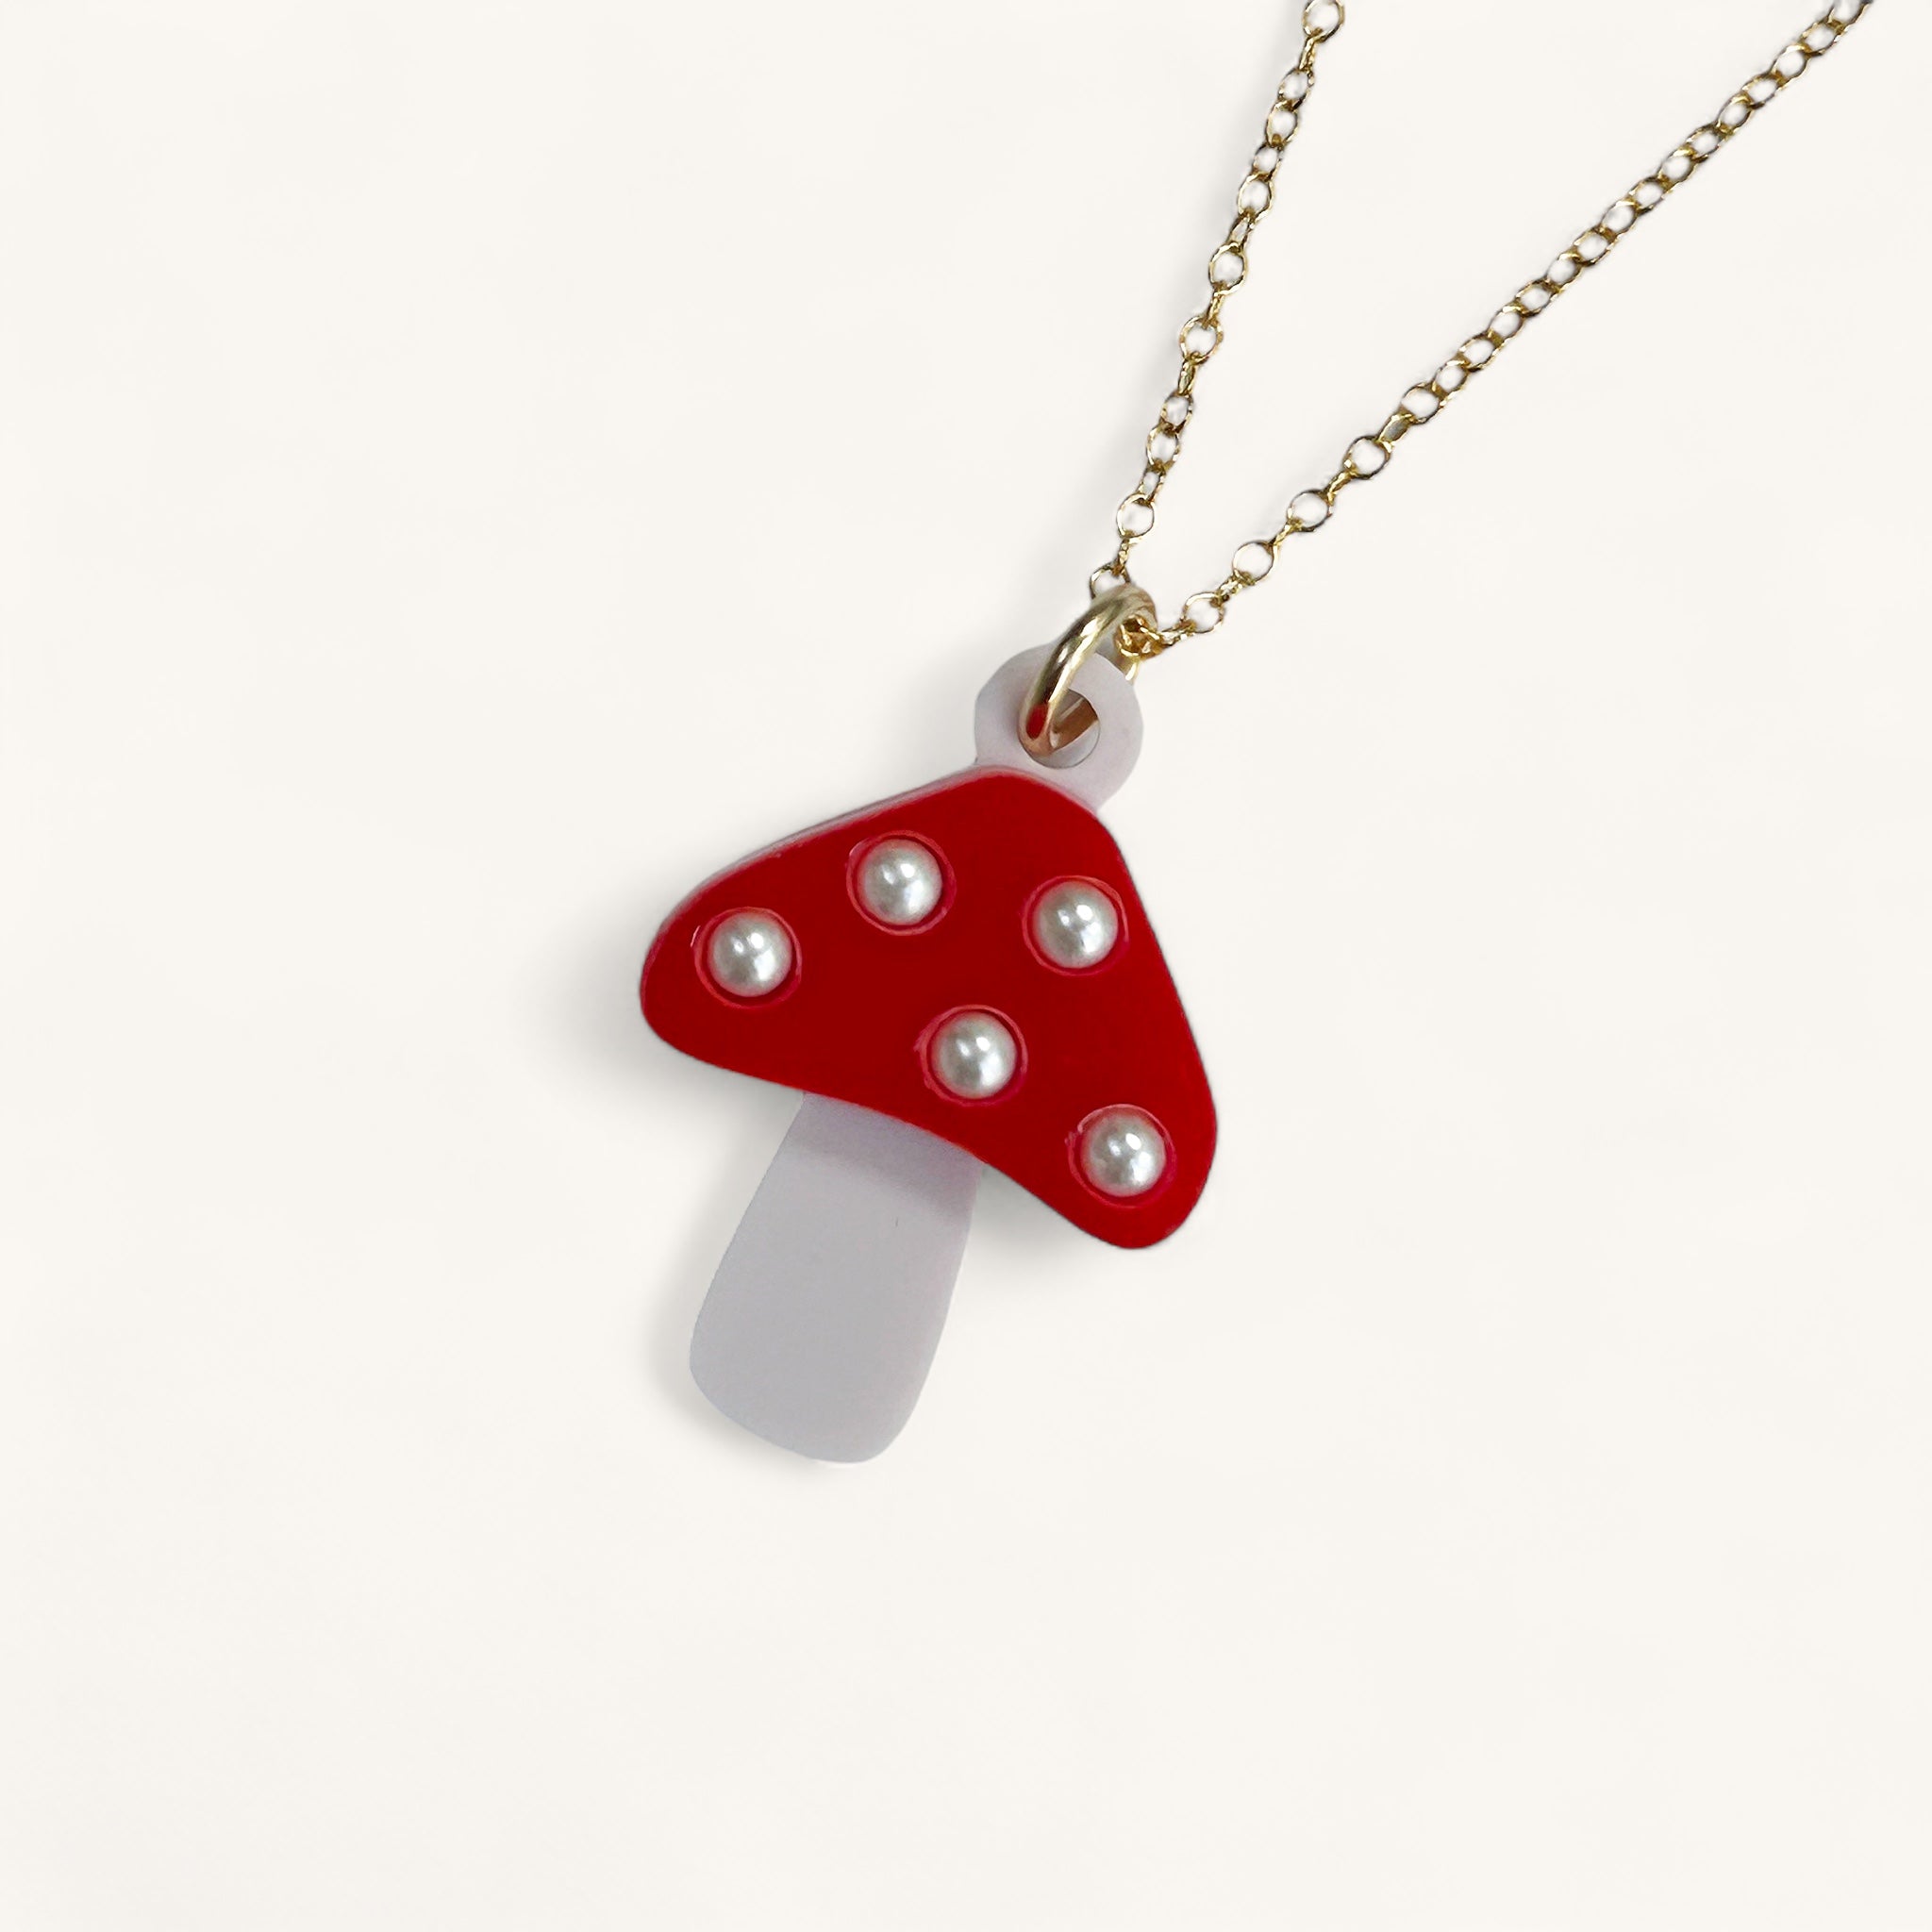 Jennifer Loiselle mushroom pendant charm necklace